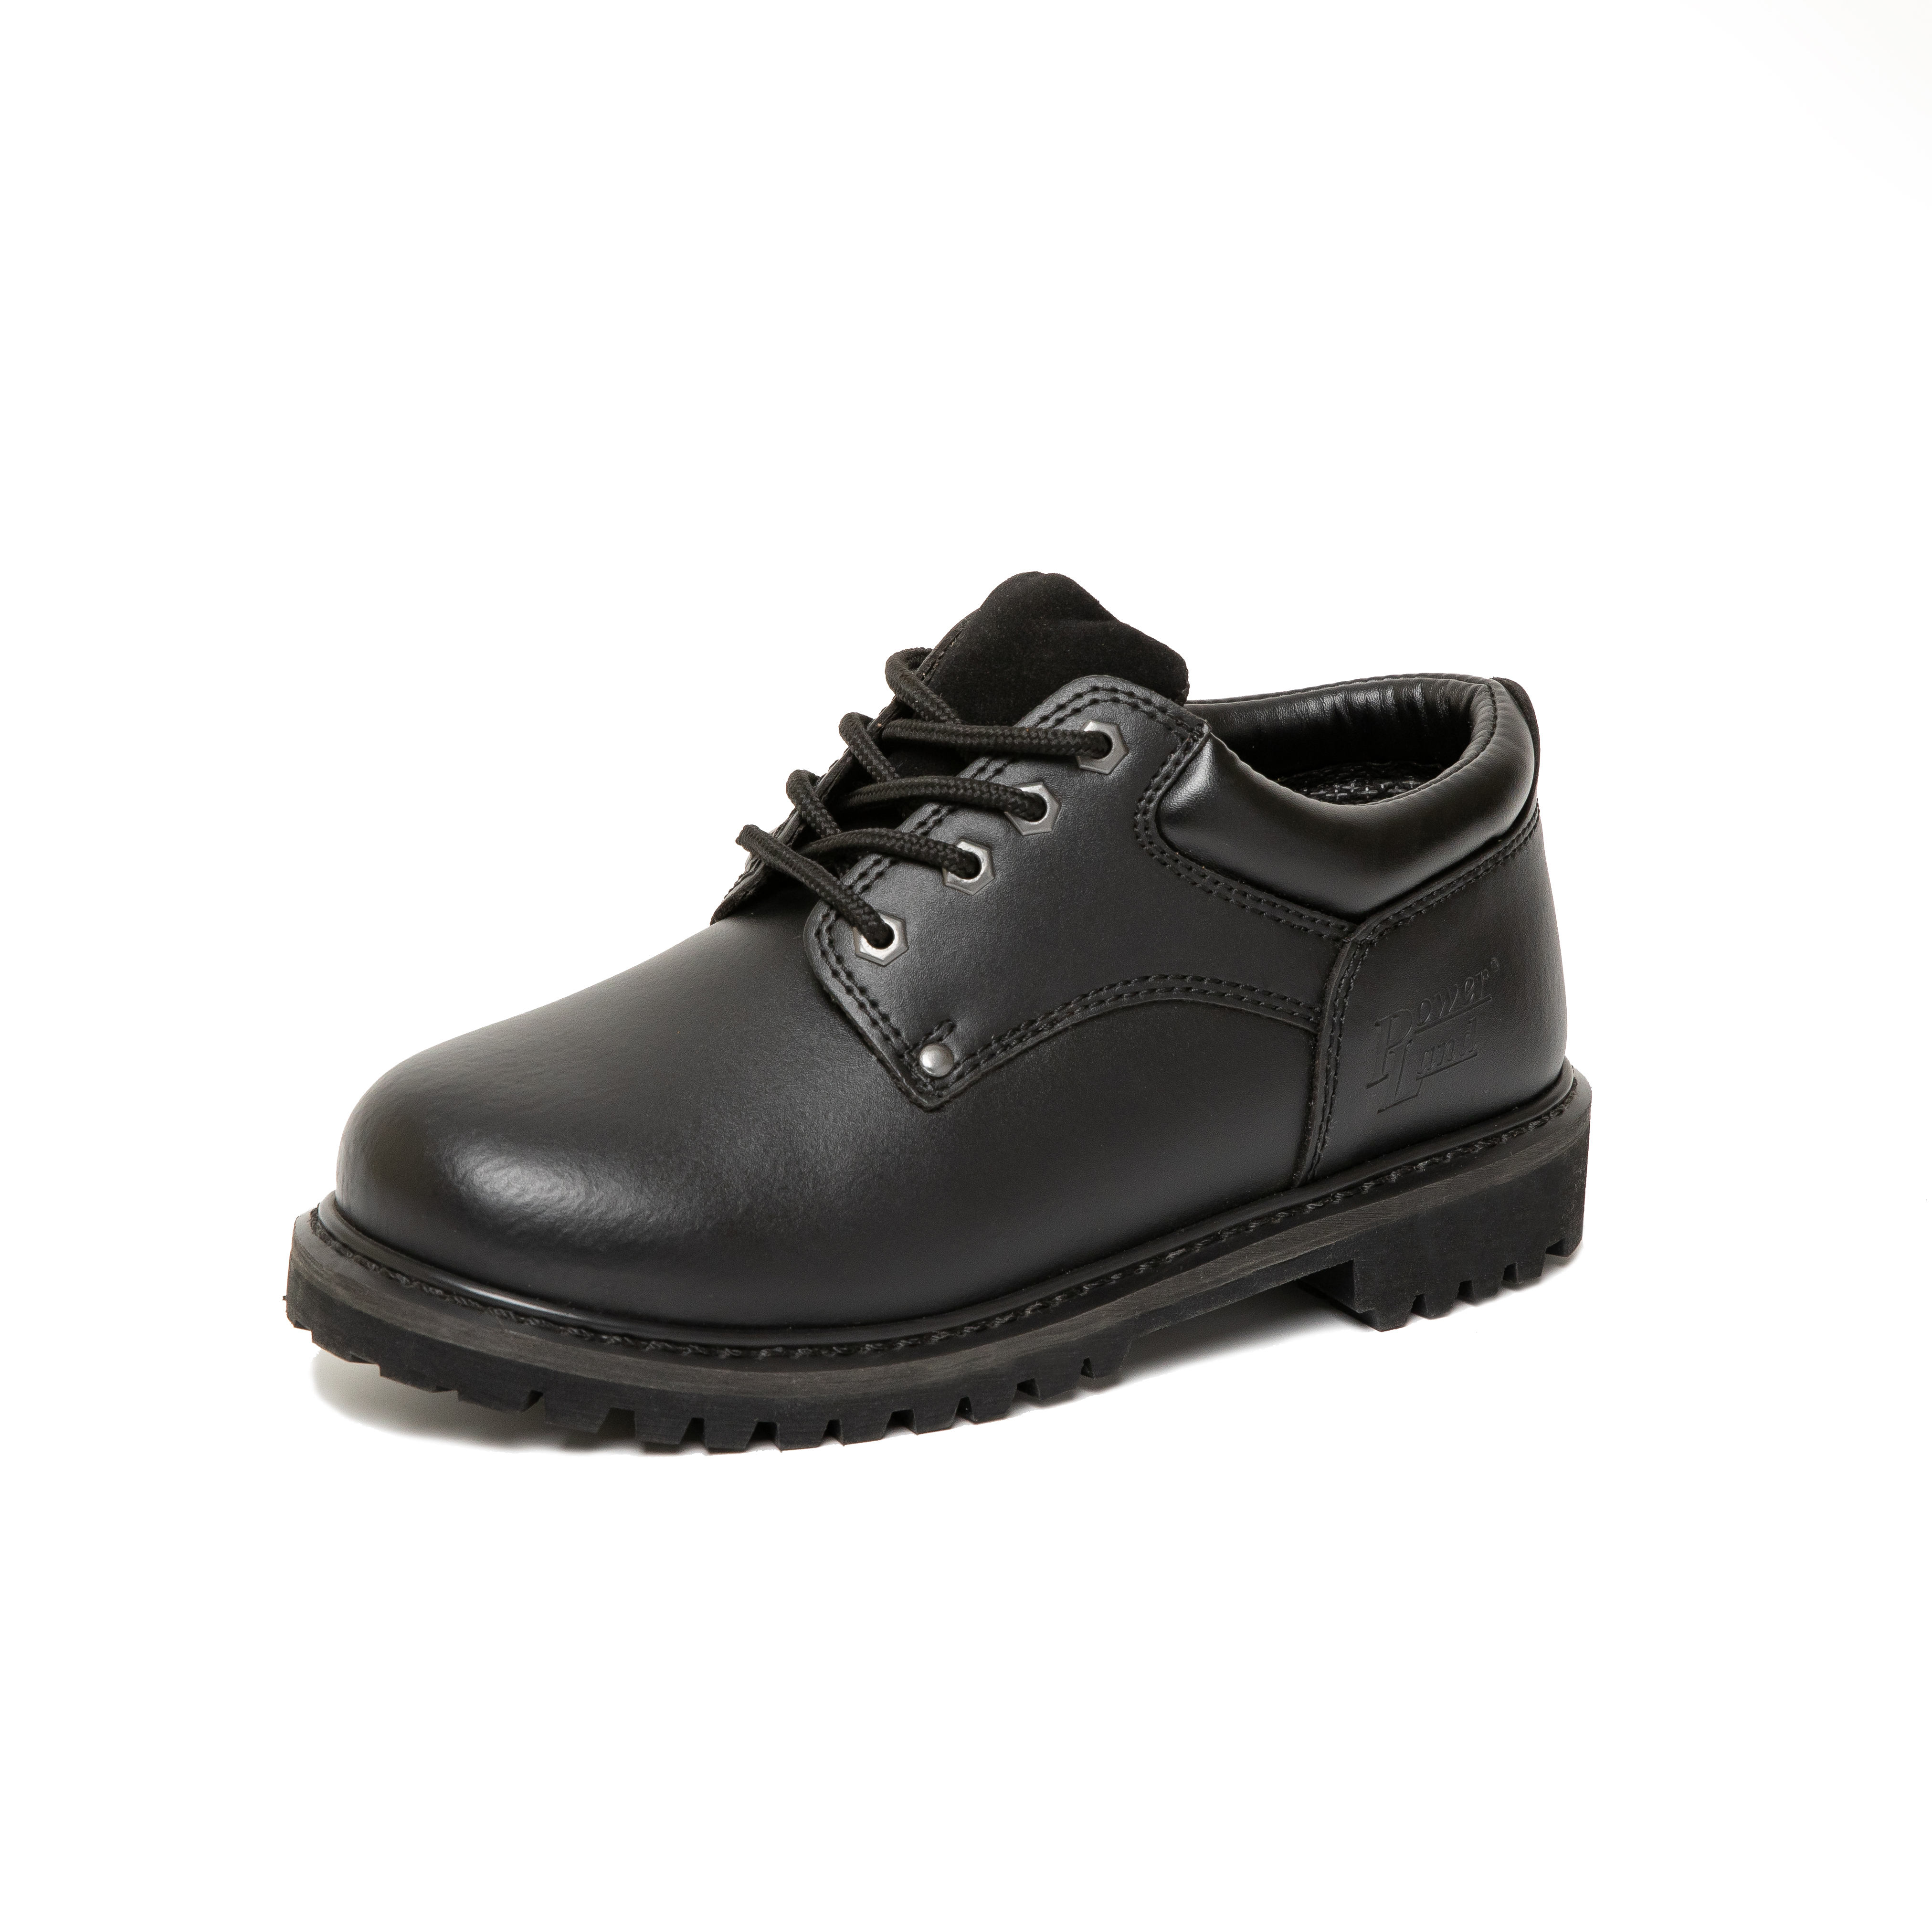 4" pánská bezpečnostní pracovní obuv z černé voděodolné kůže